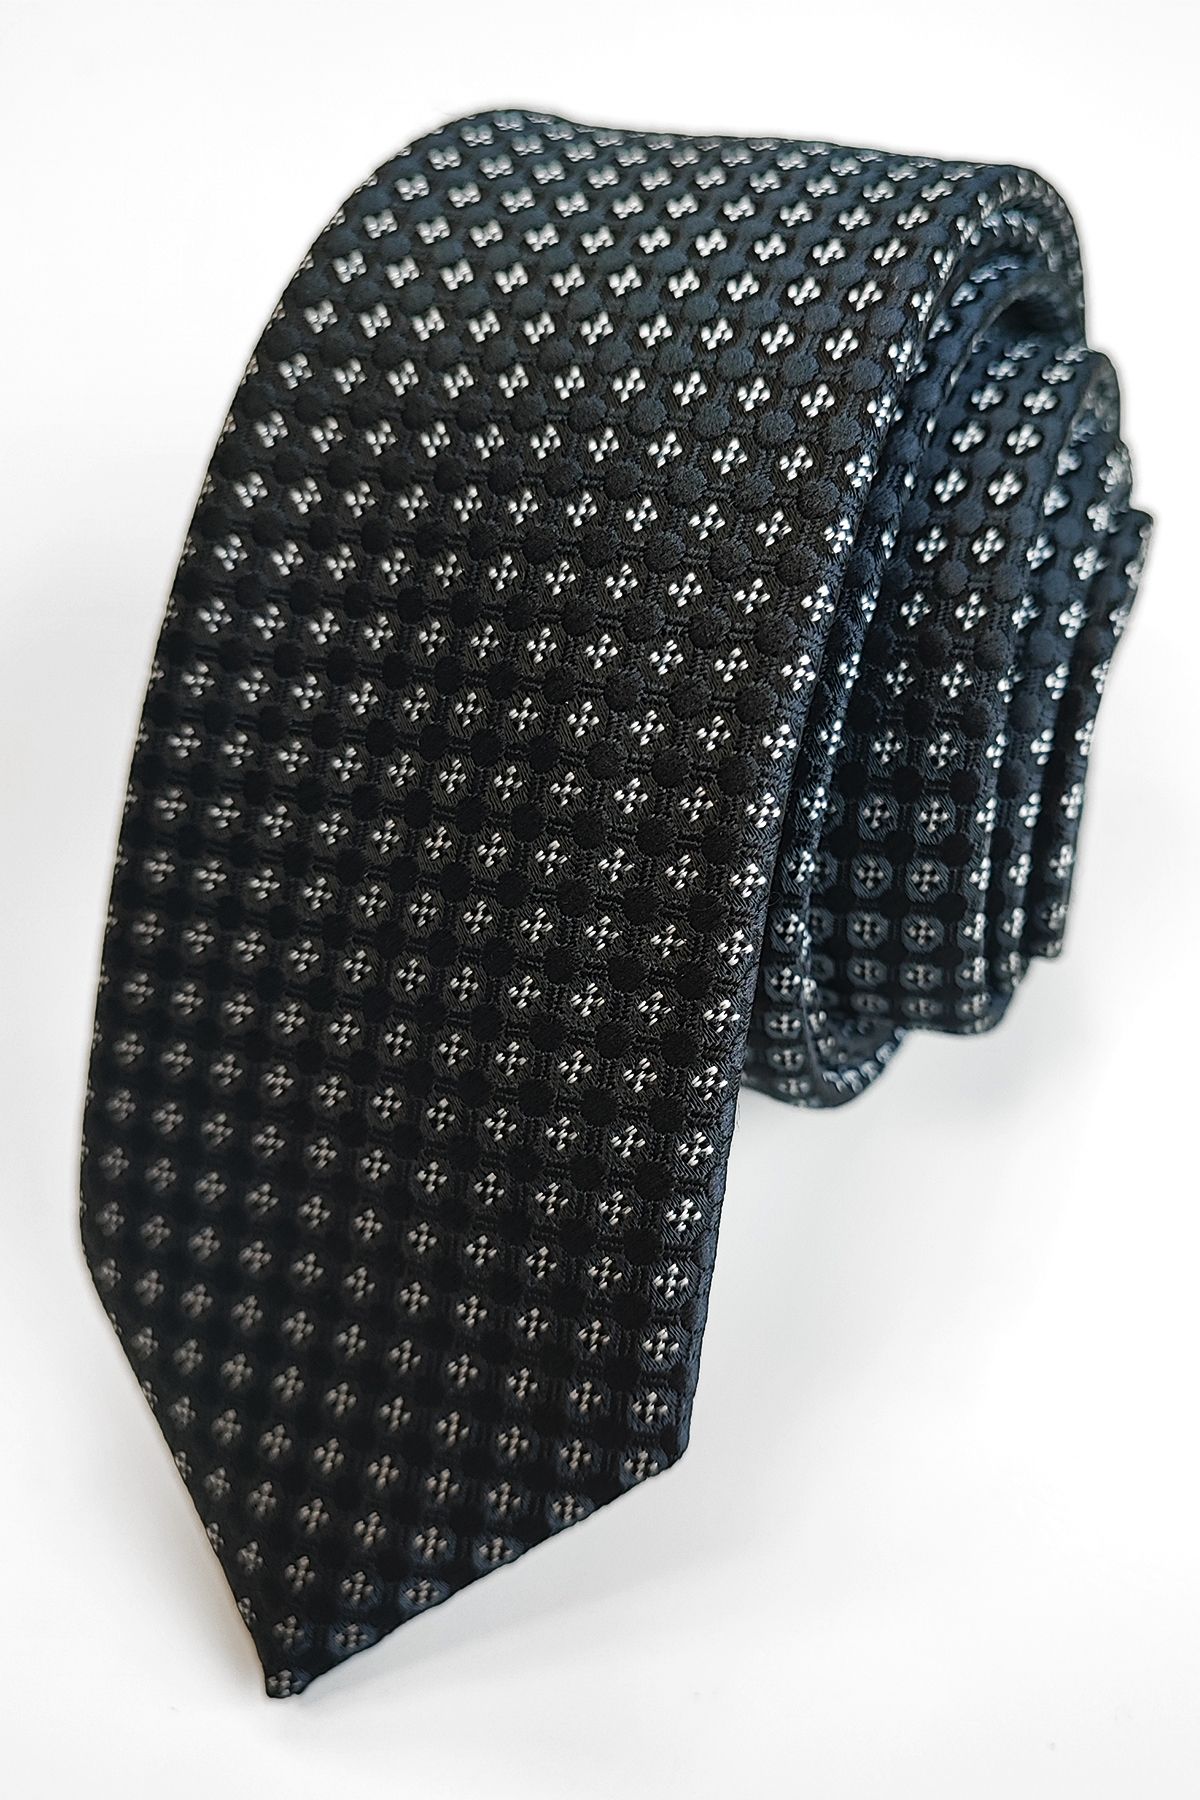 PATTERNED nyakkendő (w-075) slim